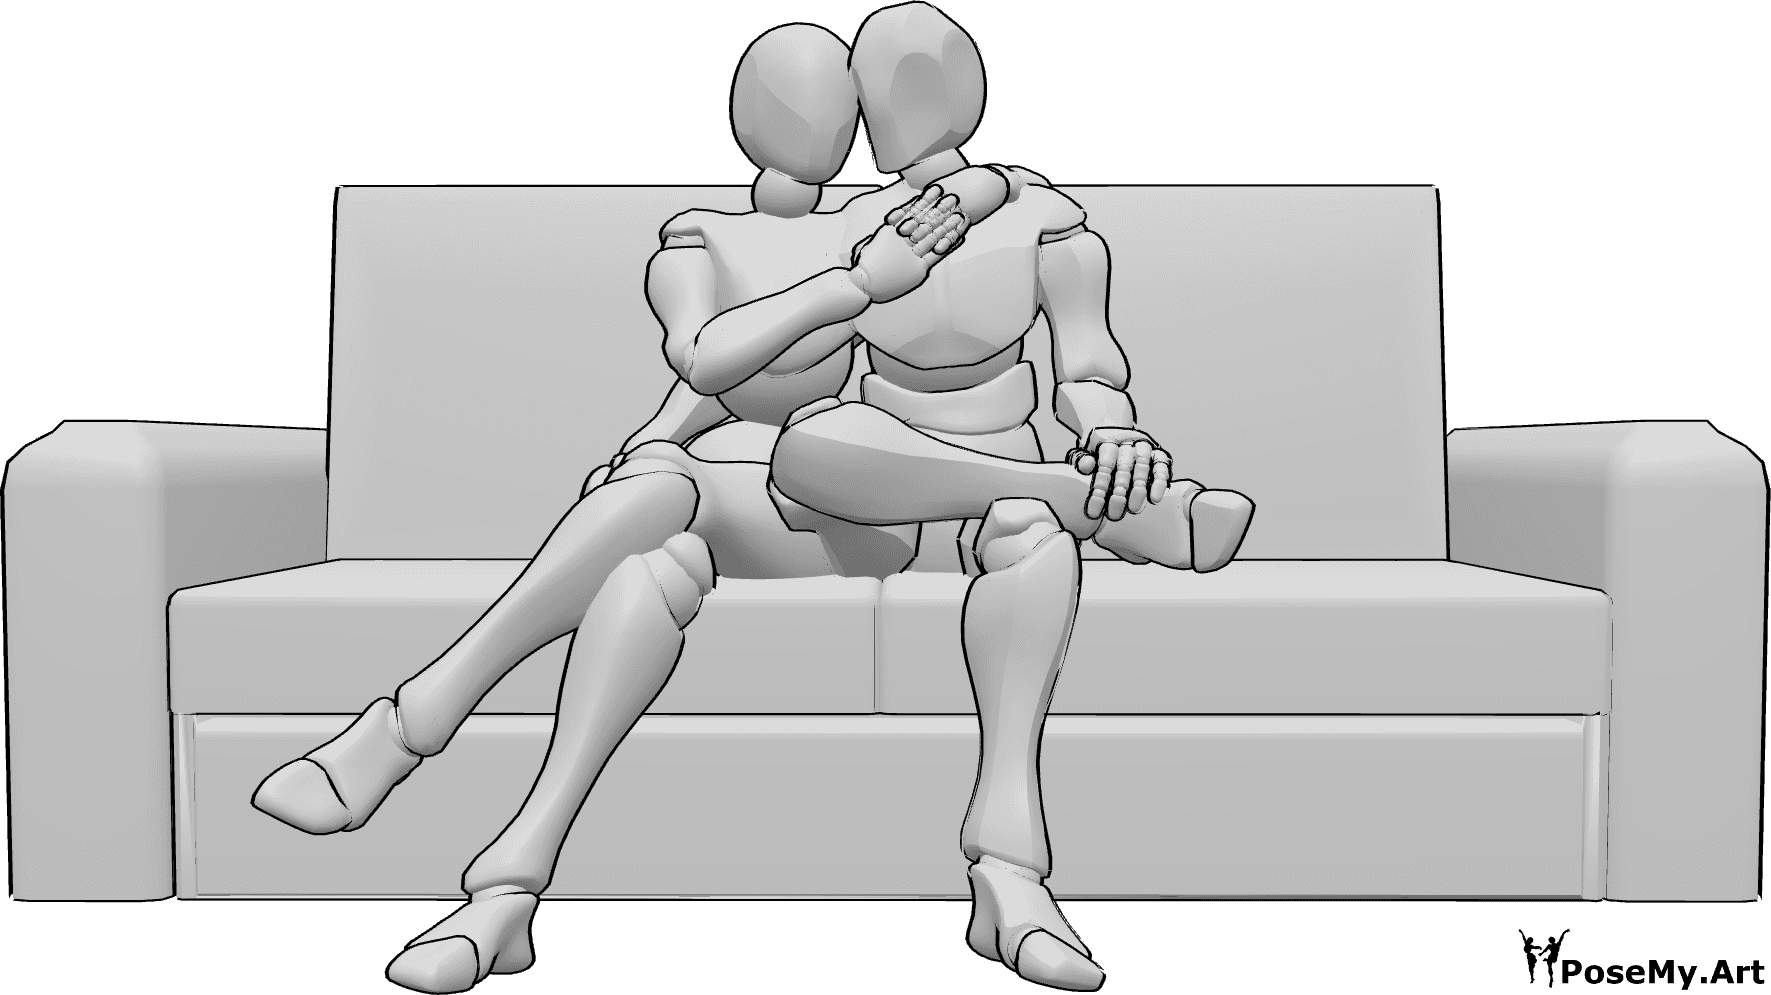 Posen-Referenz- Kuscheln sitzende Couch-Pose - Frau und Mann sitzen auf der Couch und kuscheln, umarmen sich gegenseitig